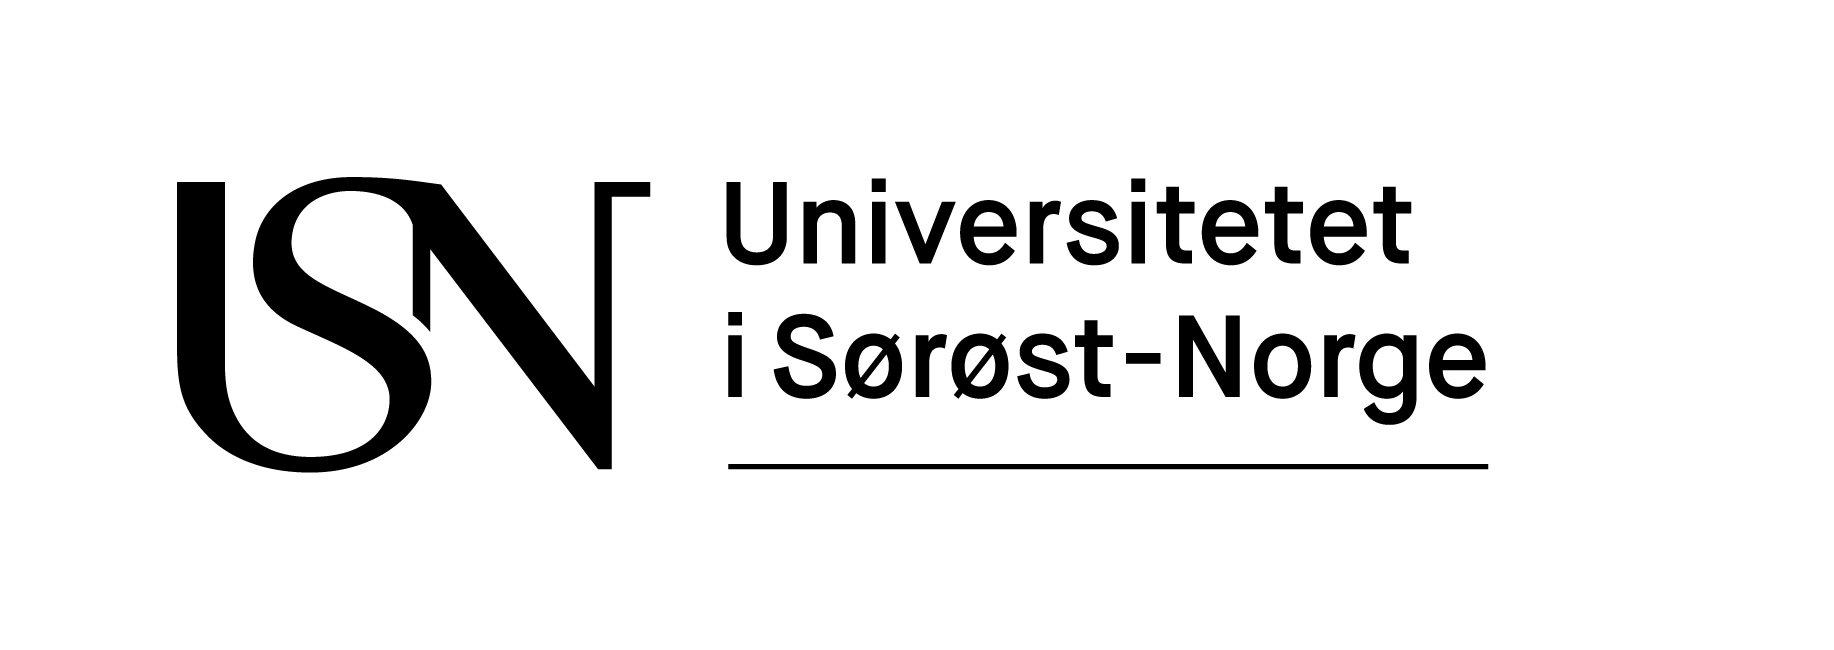 HSN Logo - Logo, Design Og Grafiske Elementer I Sørøst Norge